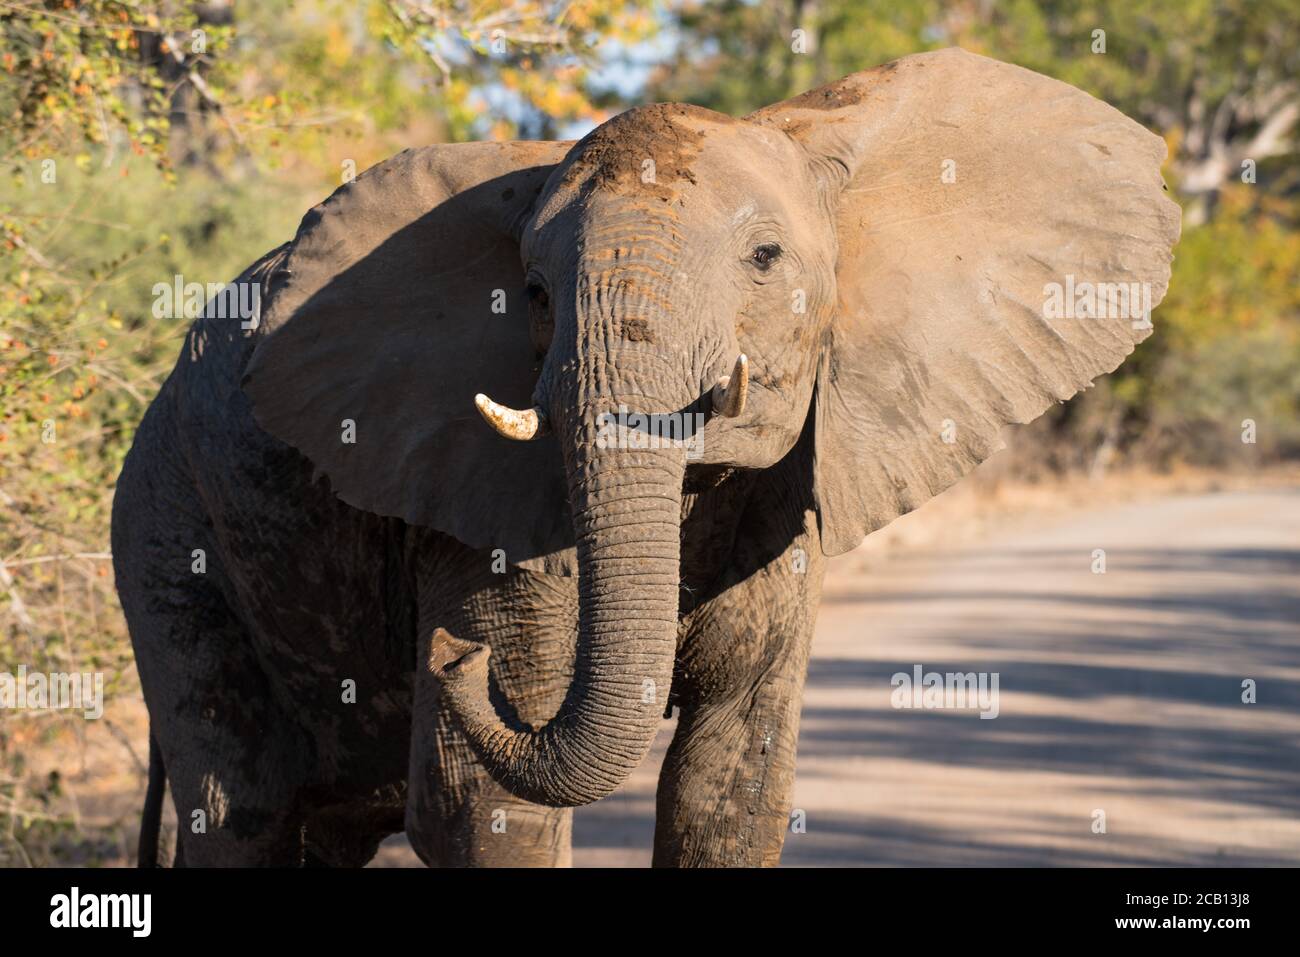 Elephant bull giovane in età in piedi nella strada ghiaiosa con la testa sollevata in alto e le orecchie aperte e il tronco arrotolato con le zecche rivolte in avanti Foto Stock